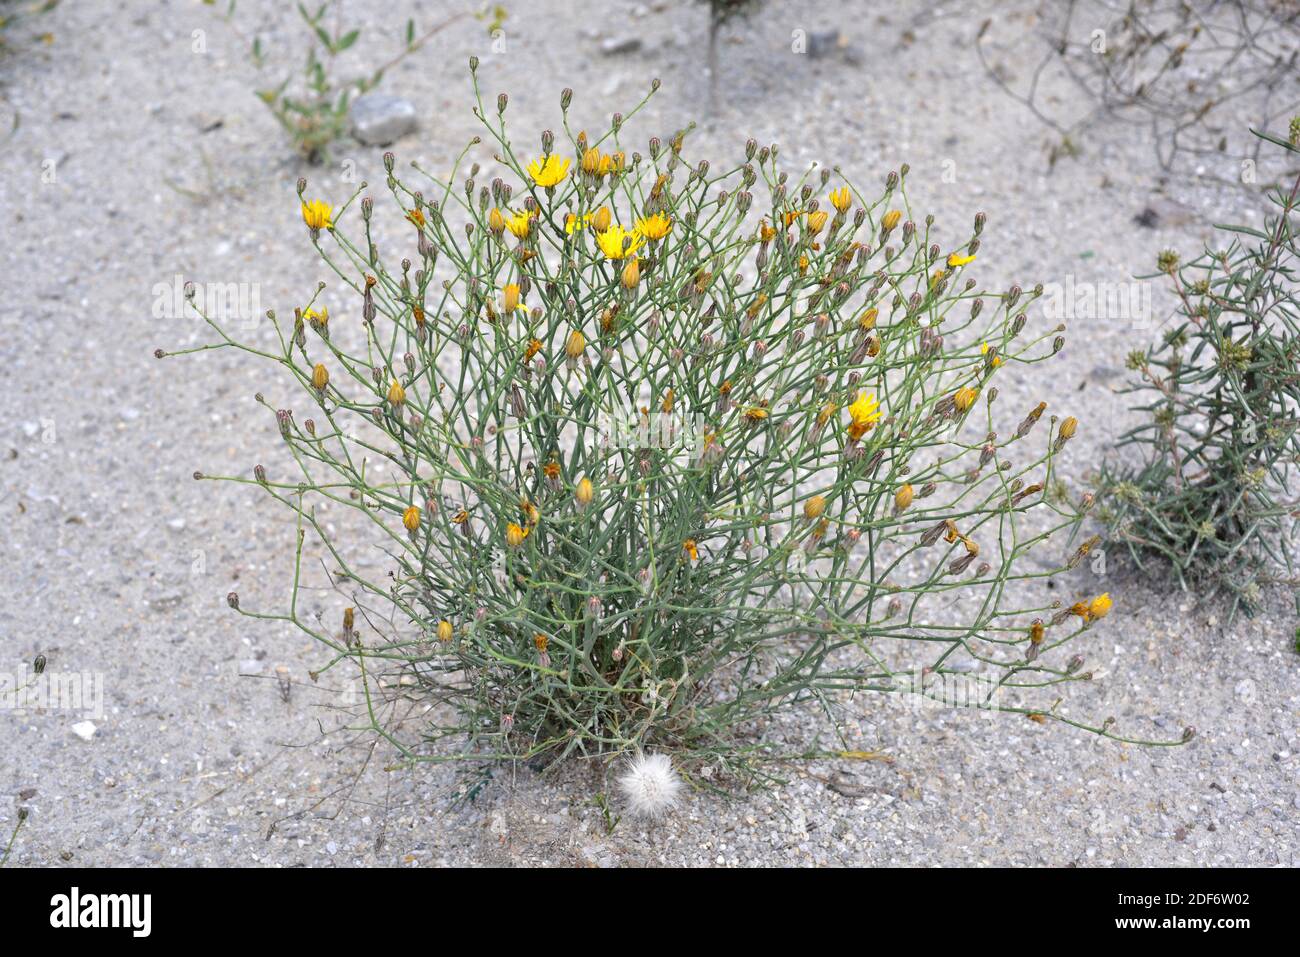 Lechuguilla falsa (Launaea fragilis) es una hierba perenne nativa del este de España y del noroeste de África. Planta floreciente. Foto de stock